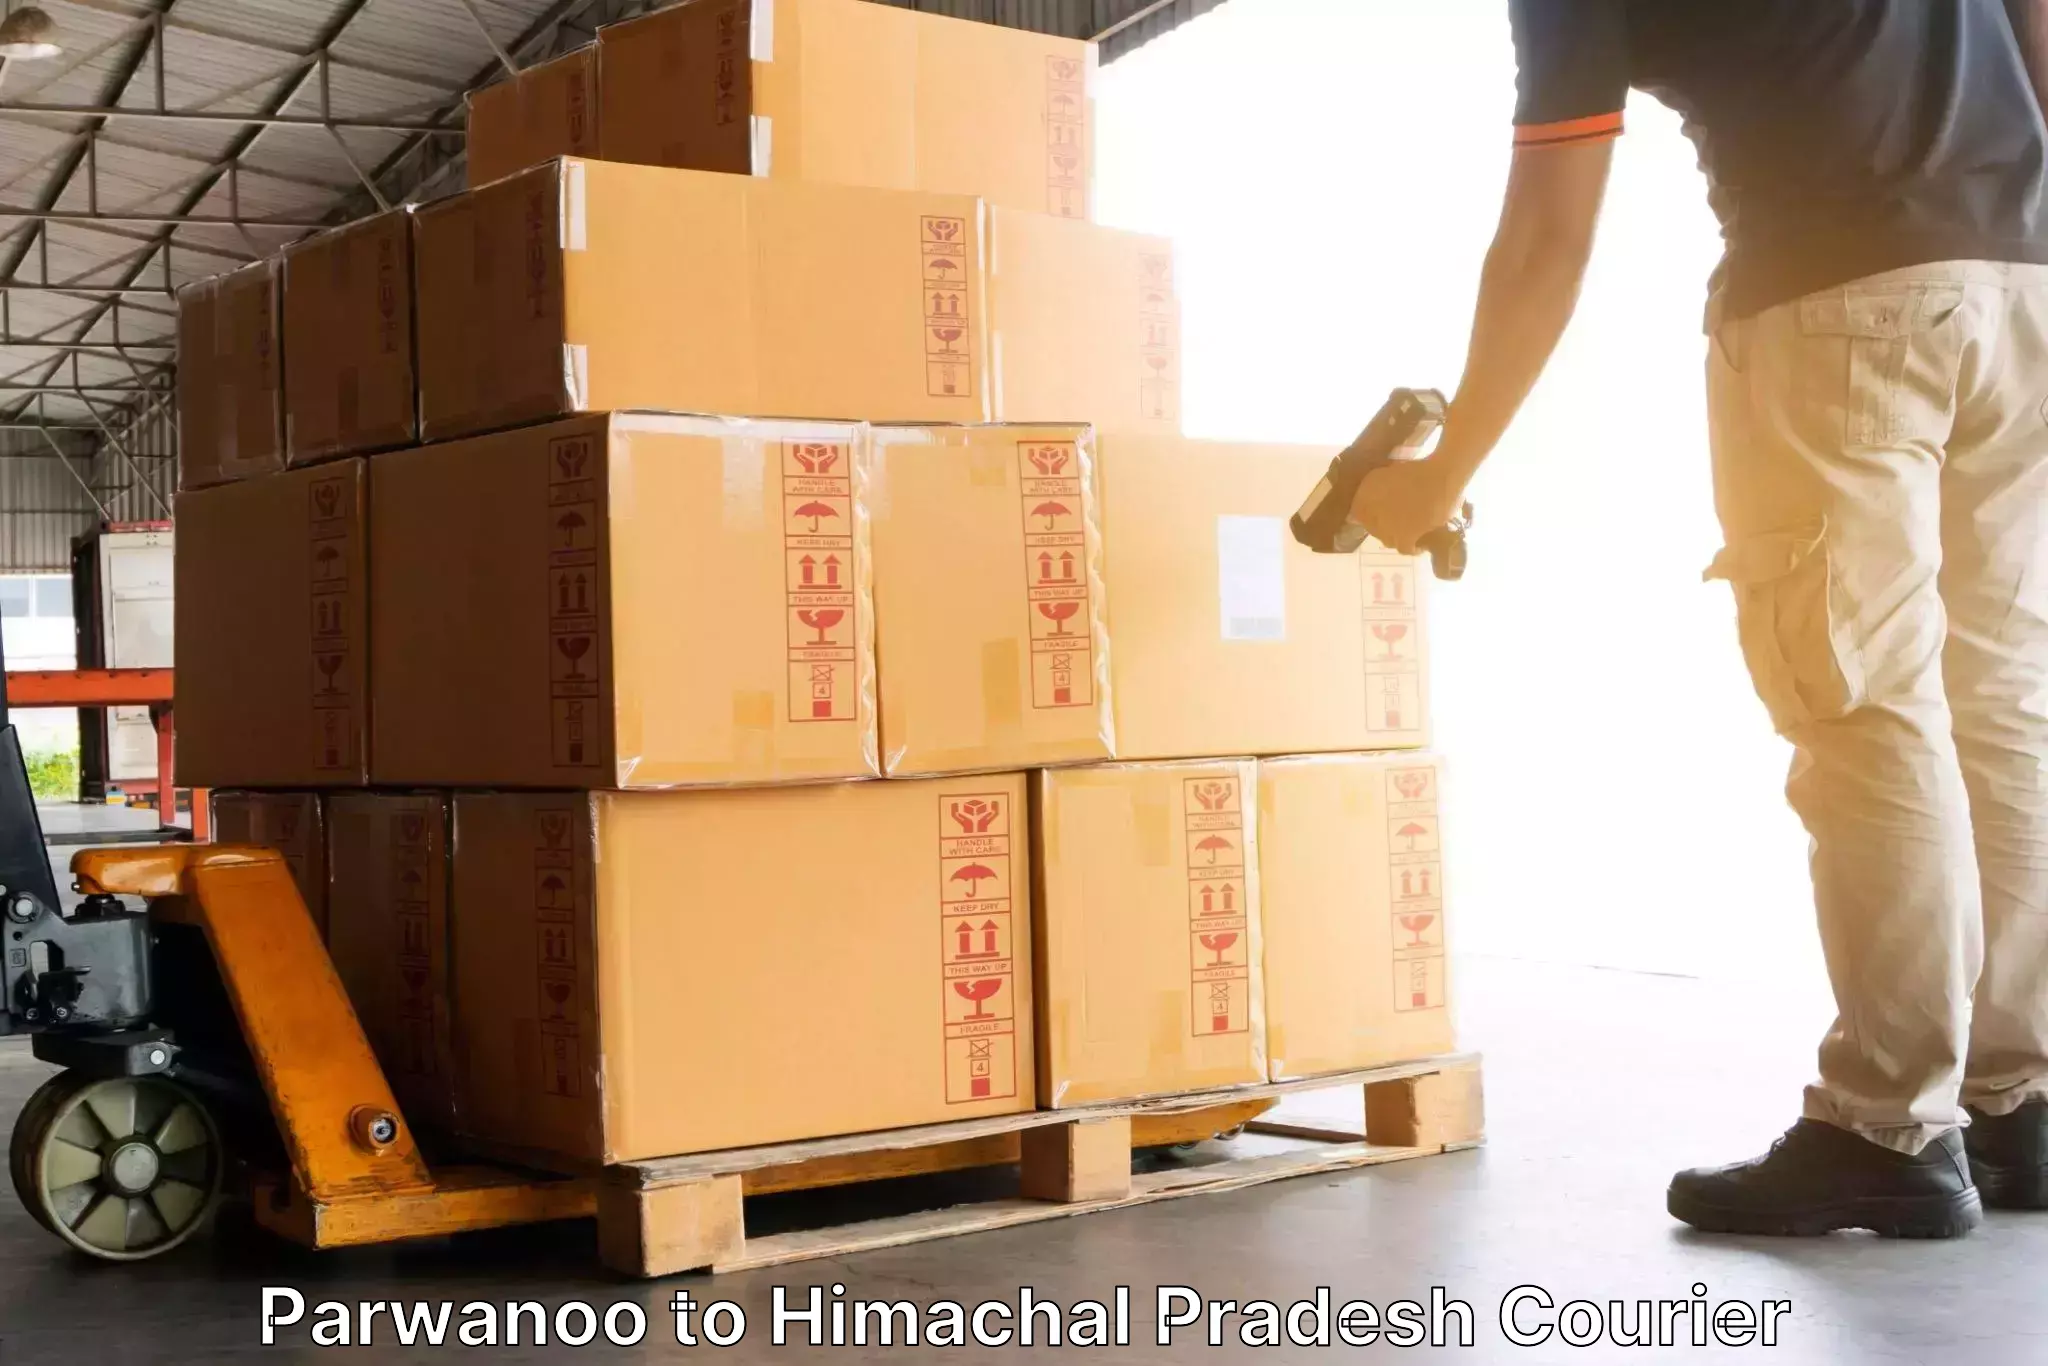 Tech-enabled shipping Parwanoo to IIT Mandi